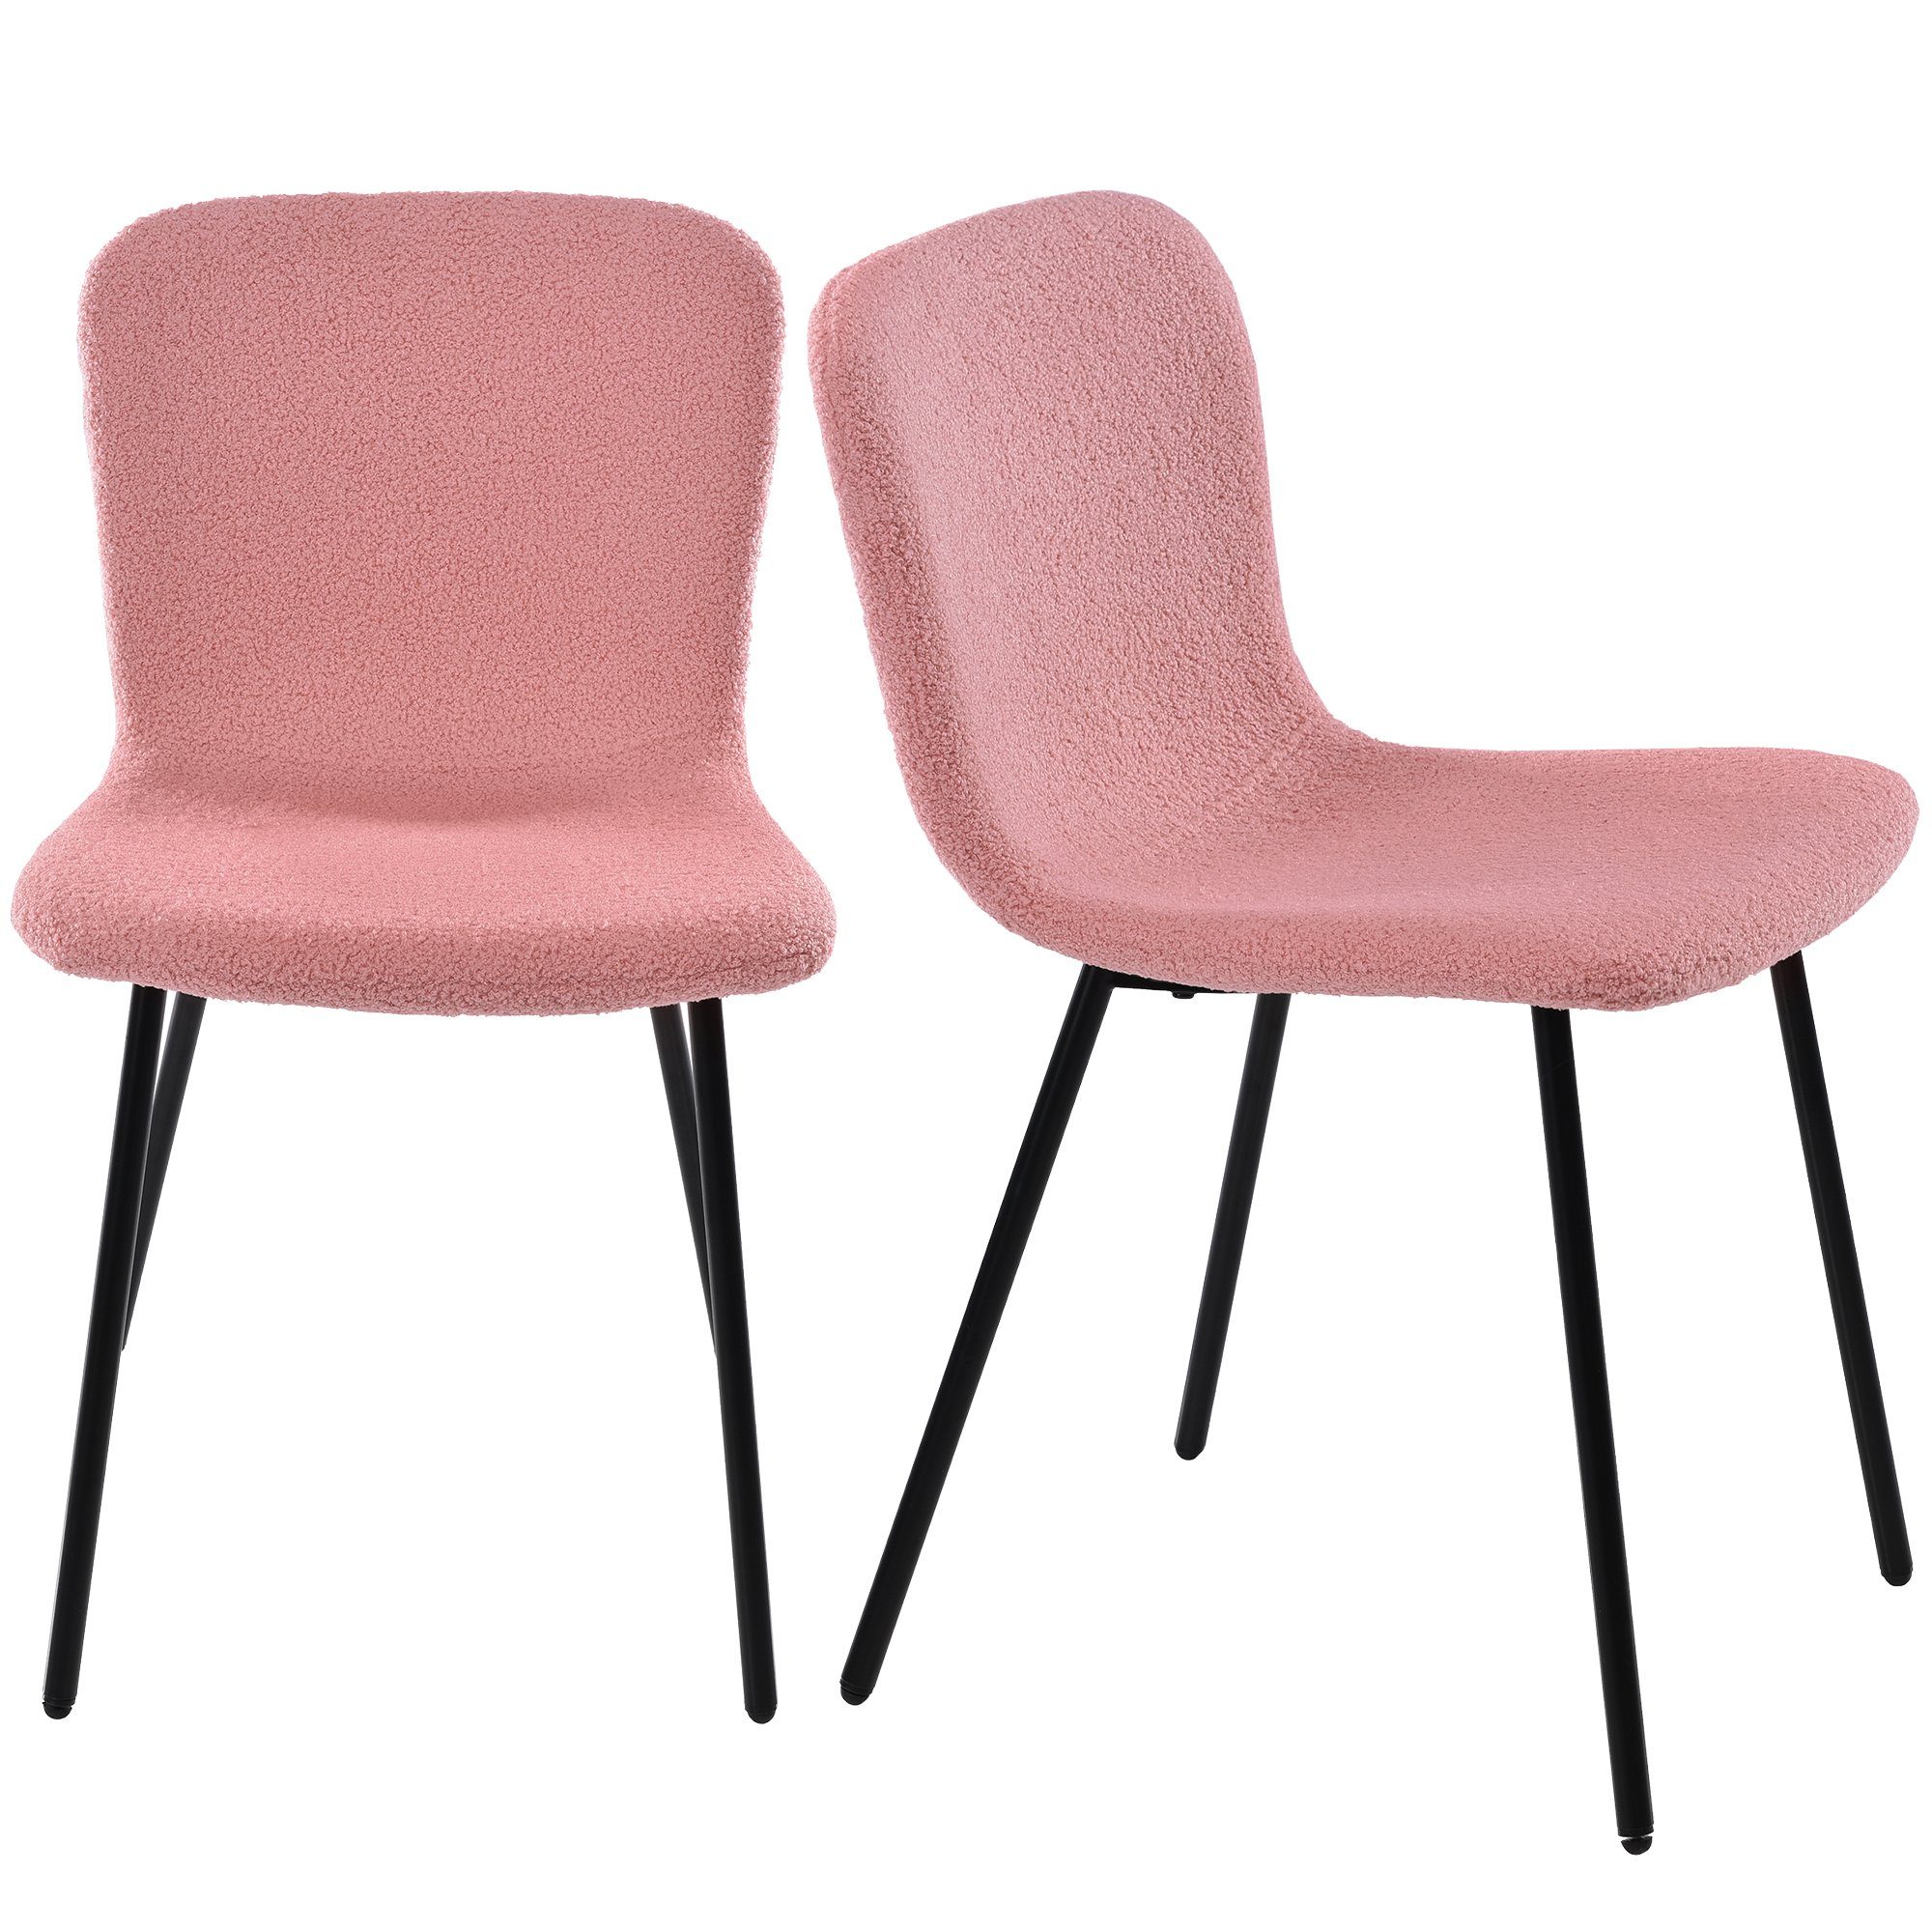 Sweiko Esszimmerstuhl (4er Set Polsterstuhl mit Sitz und Rücken gepolstert, 4 St), mit Rückenlehne, Sitzfläche aus Lamm Samt, Gestell aus Metall Rosa | Rosa | Stühle